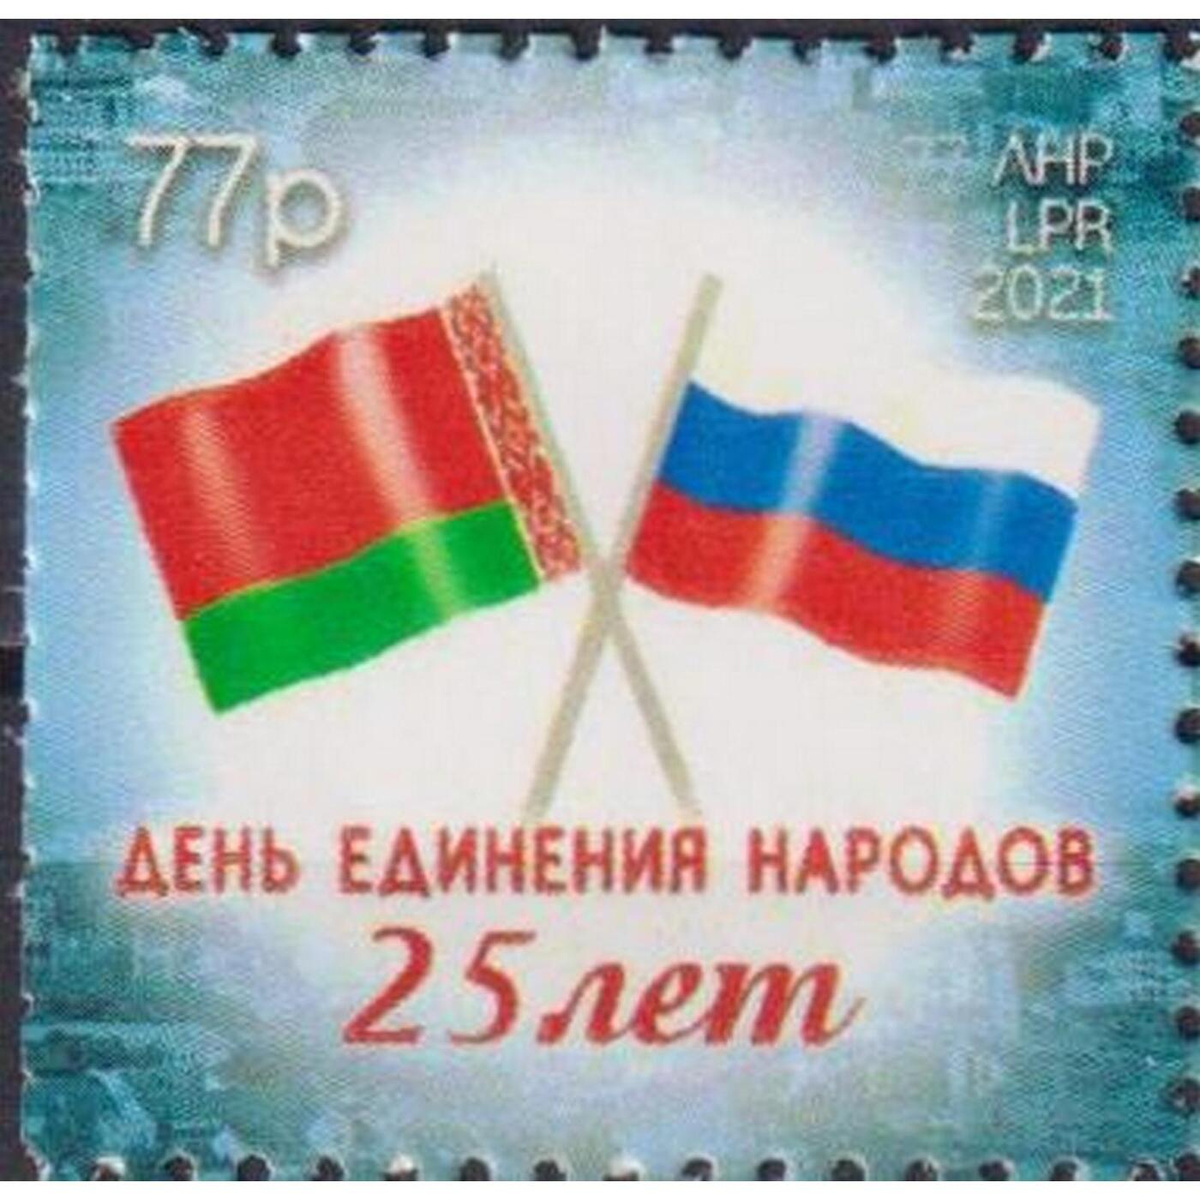 День единства народов россии и белоруссии